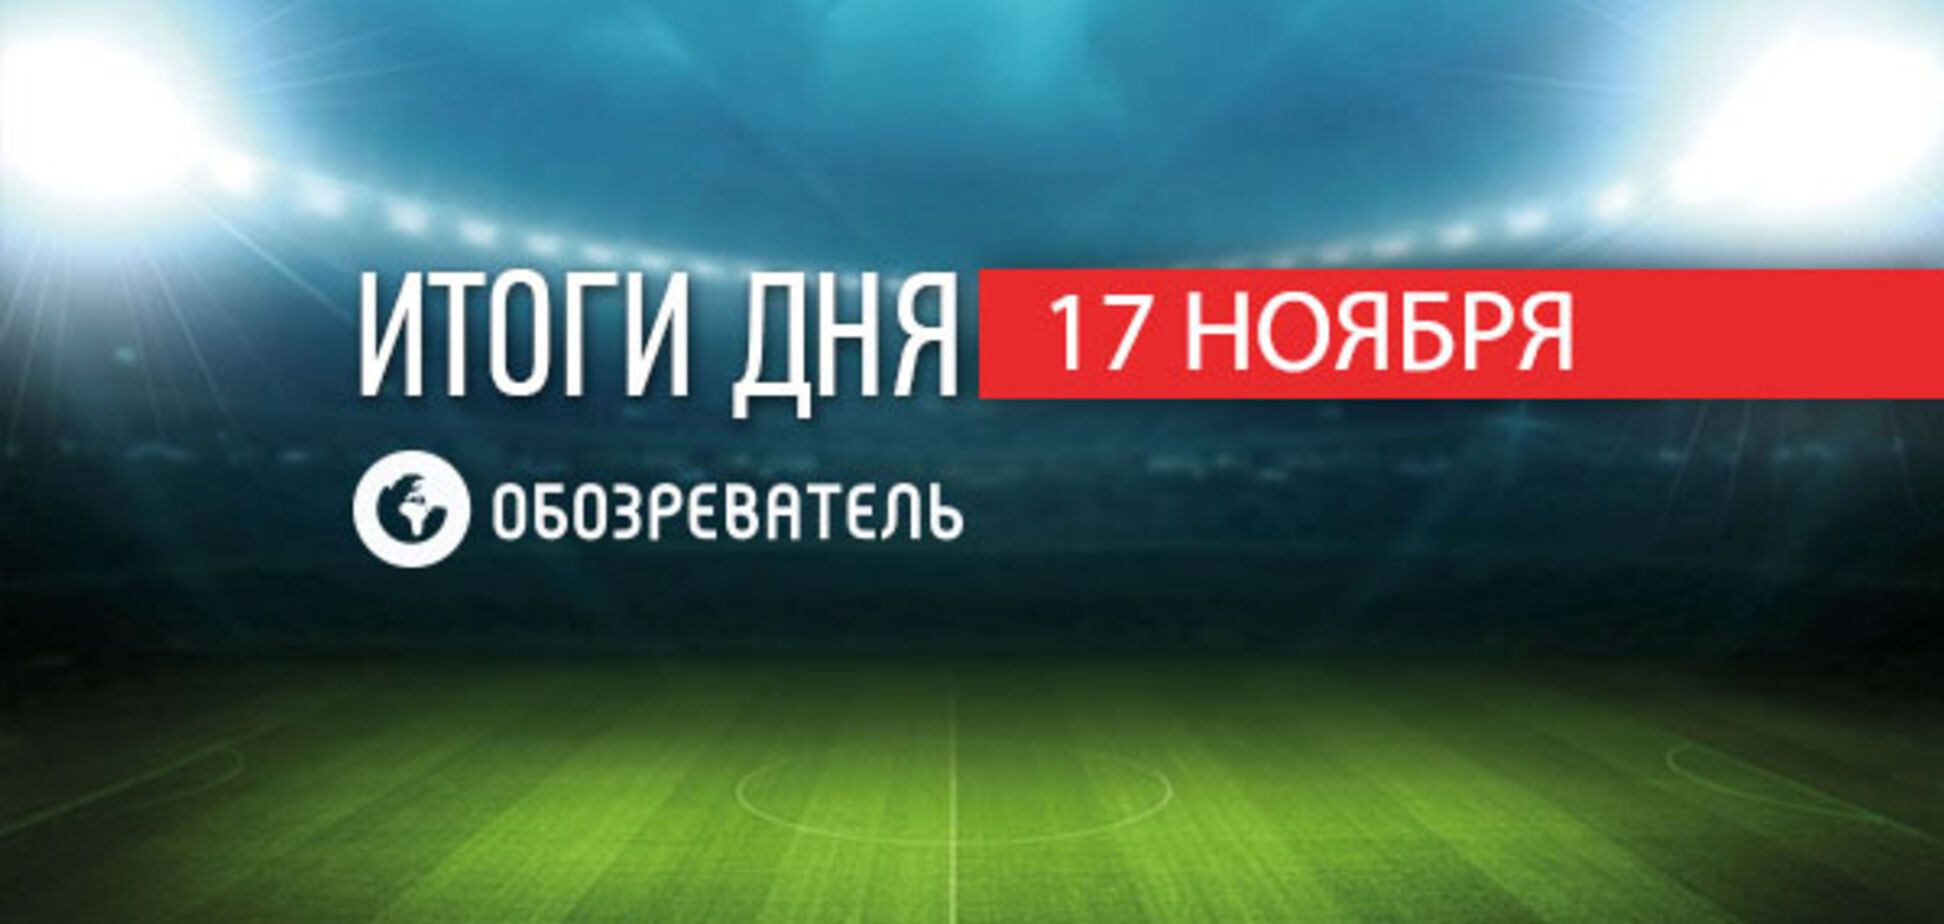 'Шахтер' переписал историю украинского футбола. Спортивные итоги 17 ноября